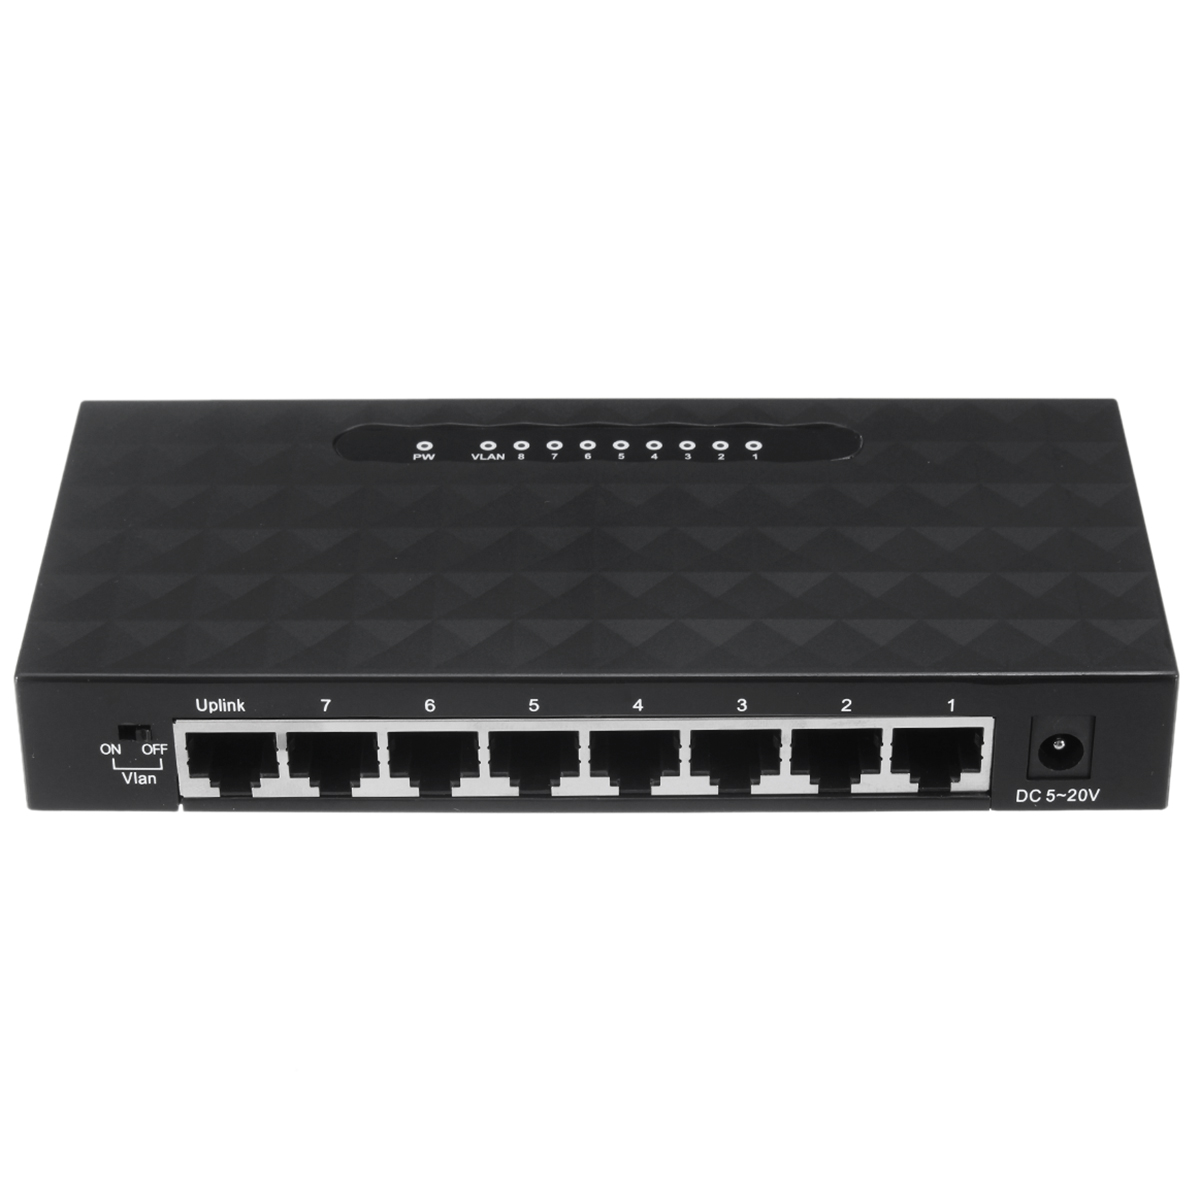 

8-Port RJ45 10/100/1000Mbps Gigabit Ethernet Network Switch Lan Hub Adapter Ethernet Splitter for Routers Modems